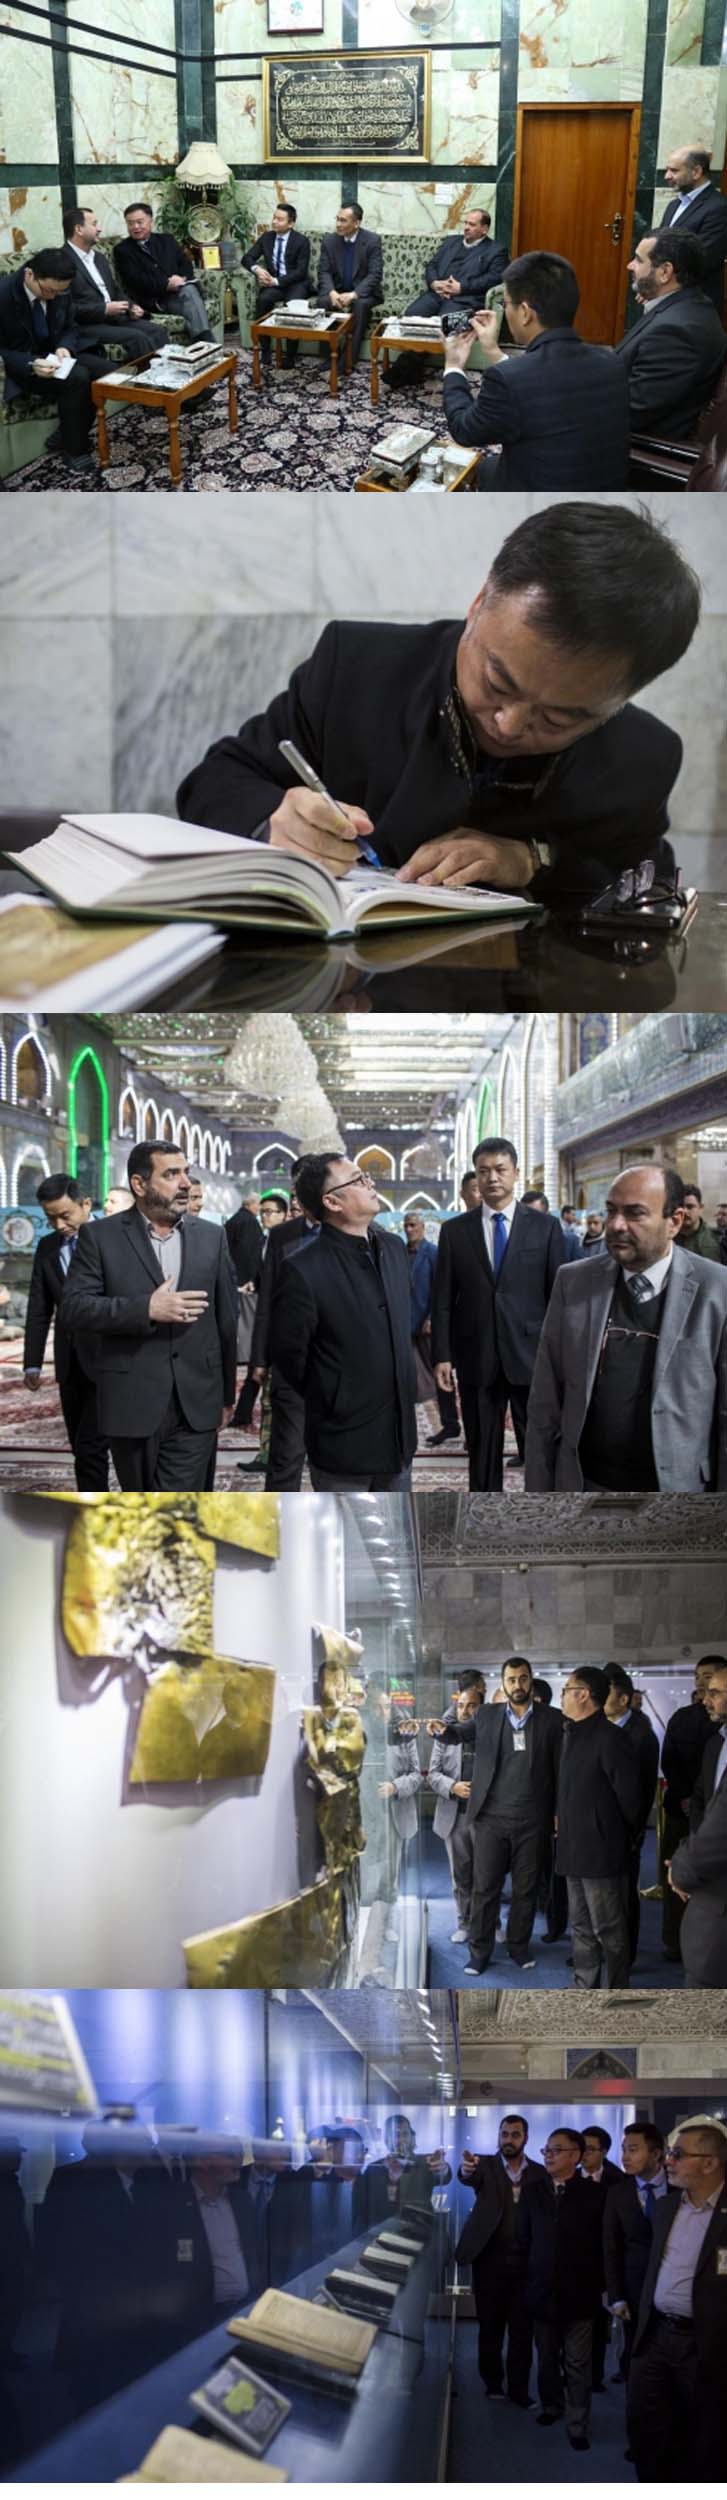 เอกอัครราชทูตจีนในอิรัก เยี่ยมชมฮะรัม (สถานฝังศพ) ของท่านอับบาส / รูปภาพ